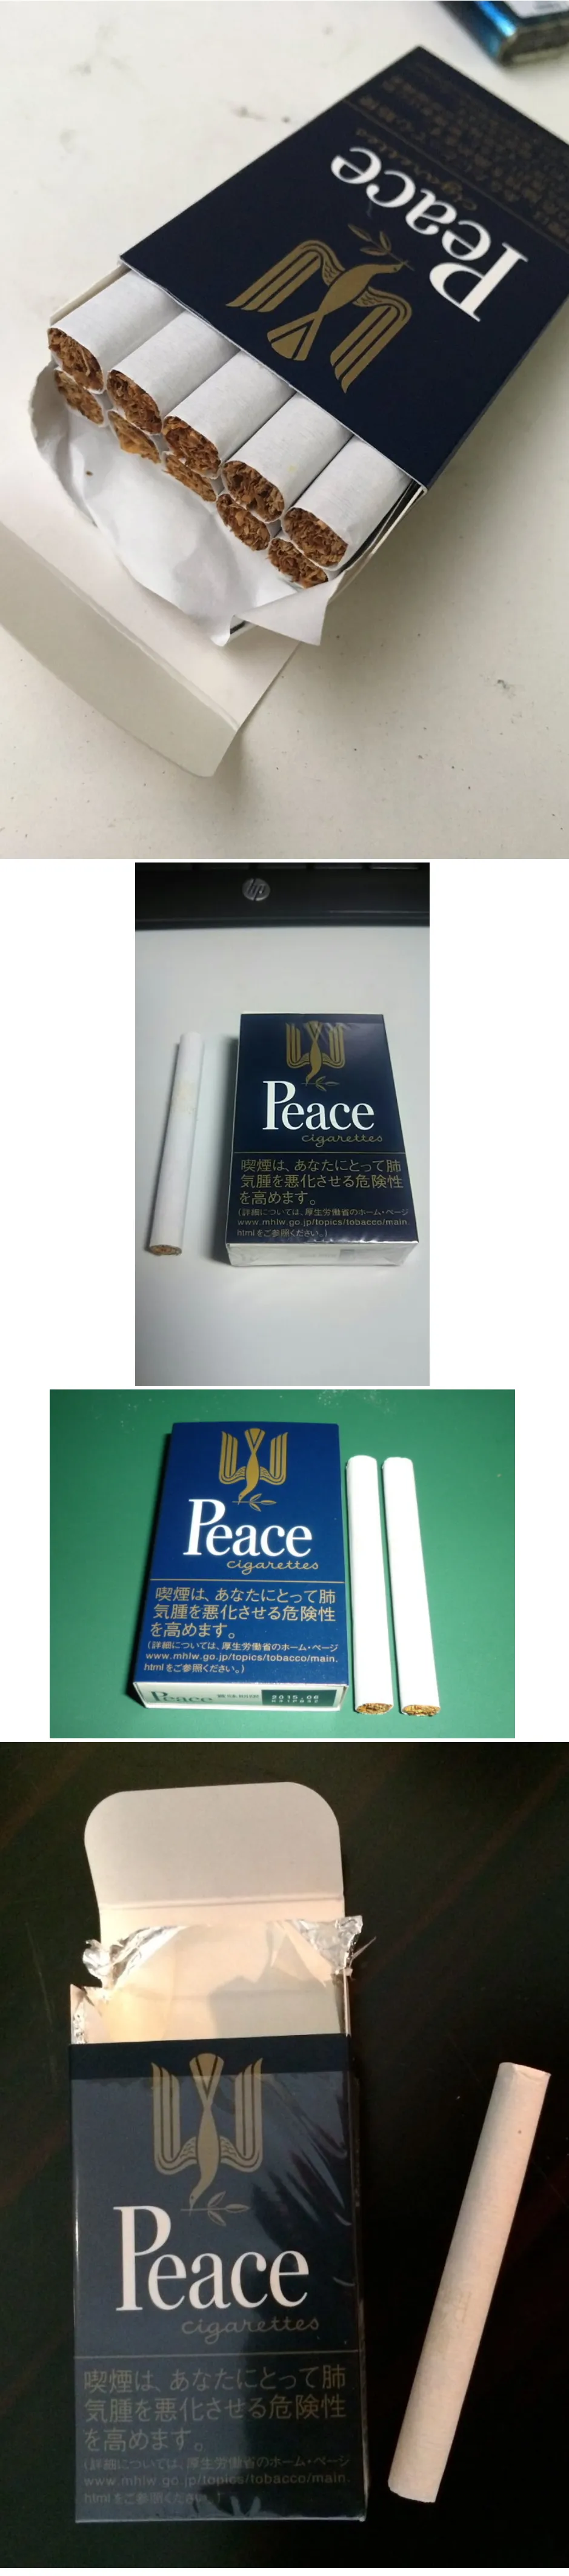 일본에서 파는 상남자의 담배